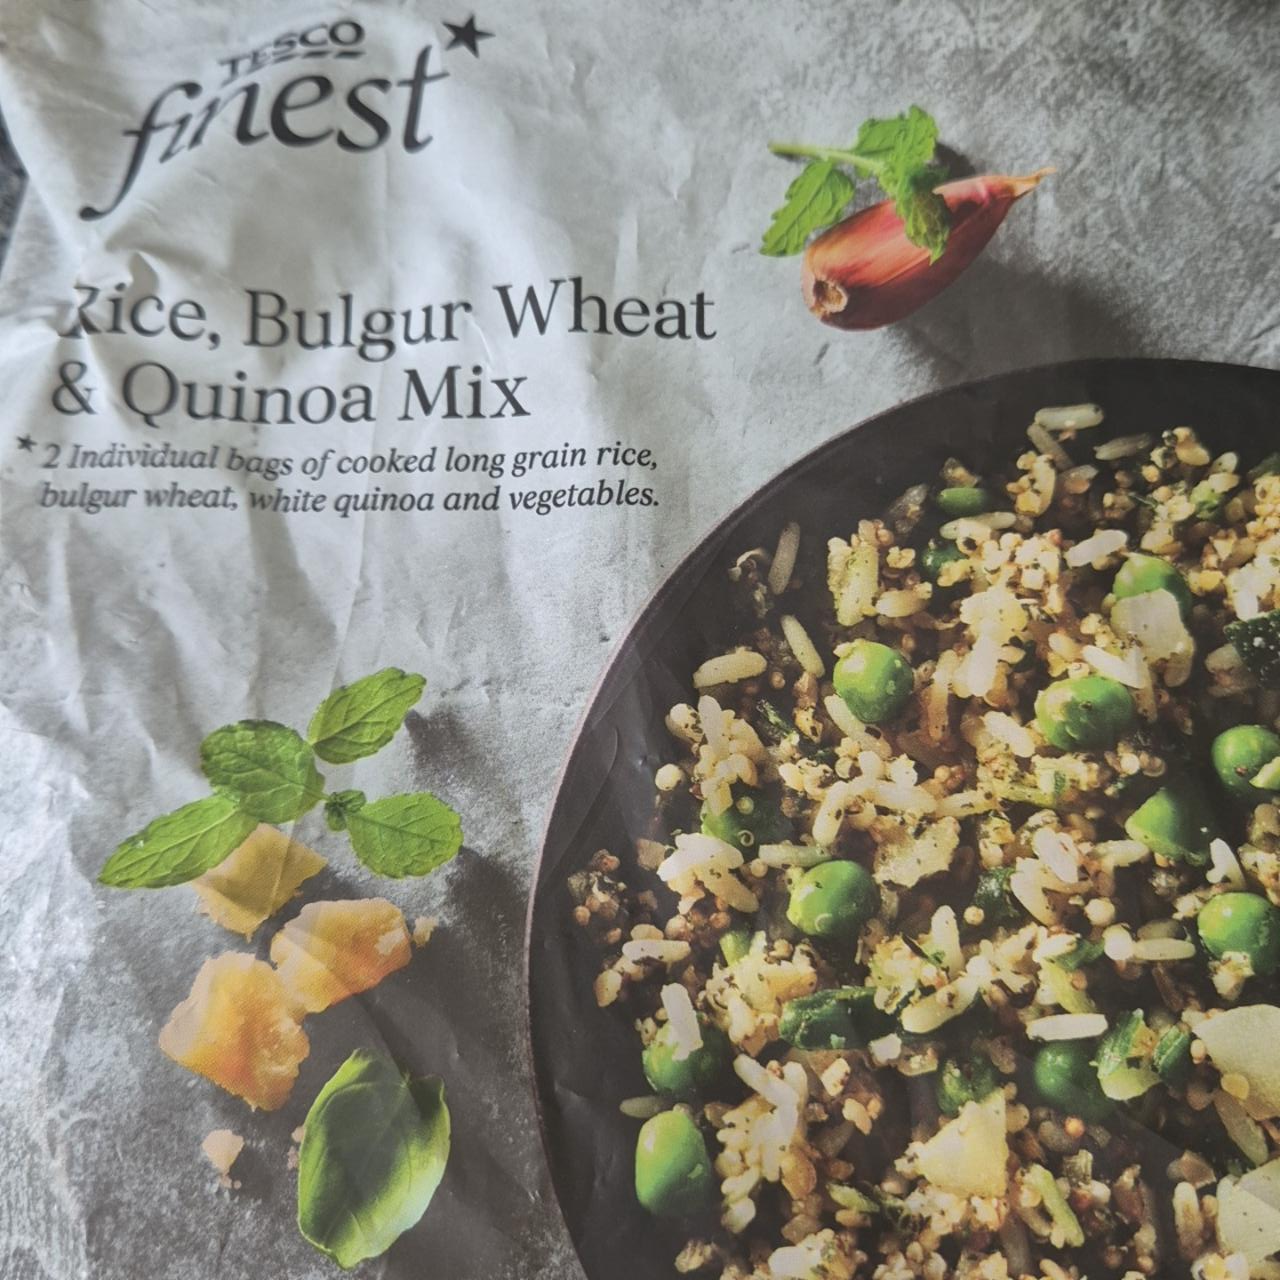 Fotografie - Rice, bulgur wheat & quinoa mix Tesco finest